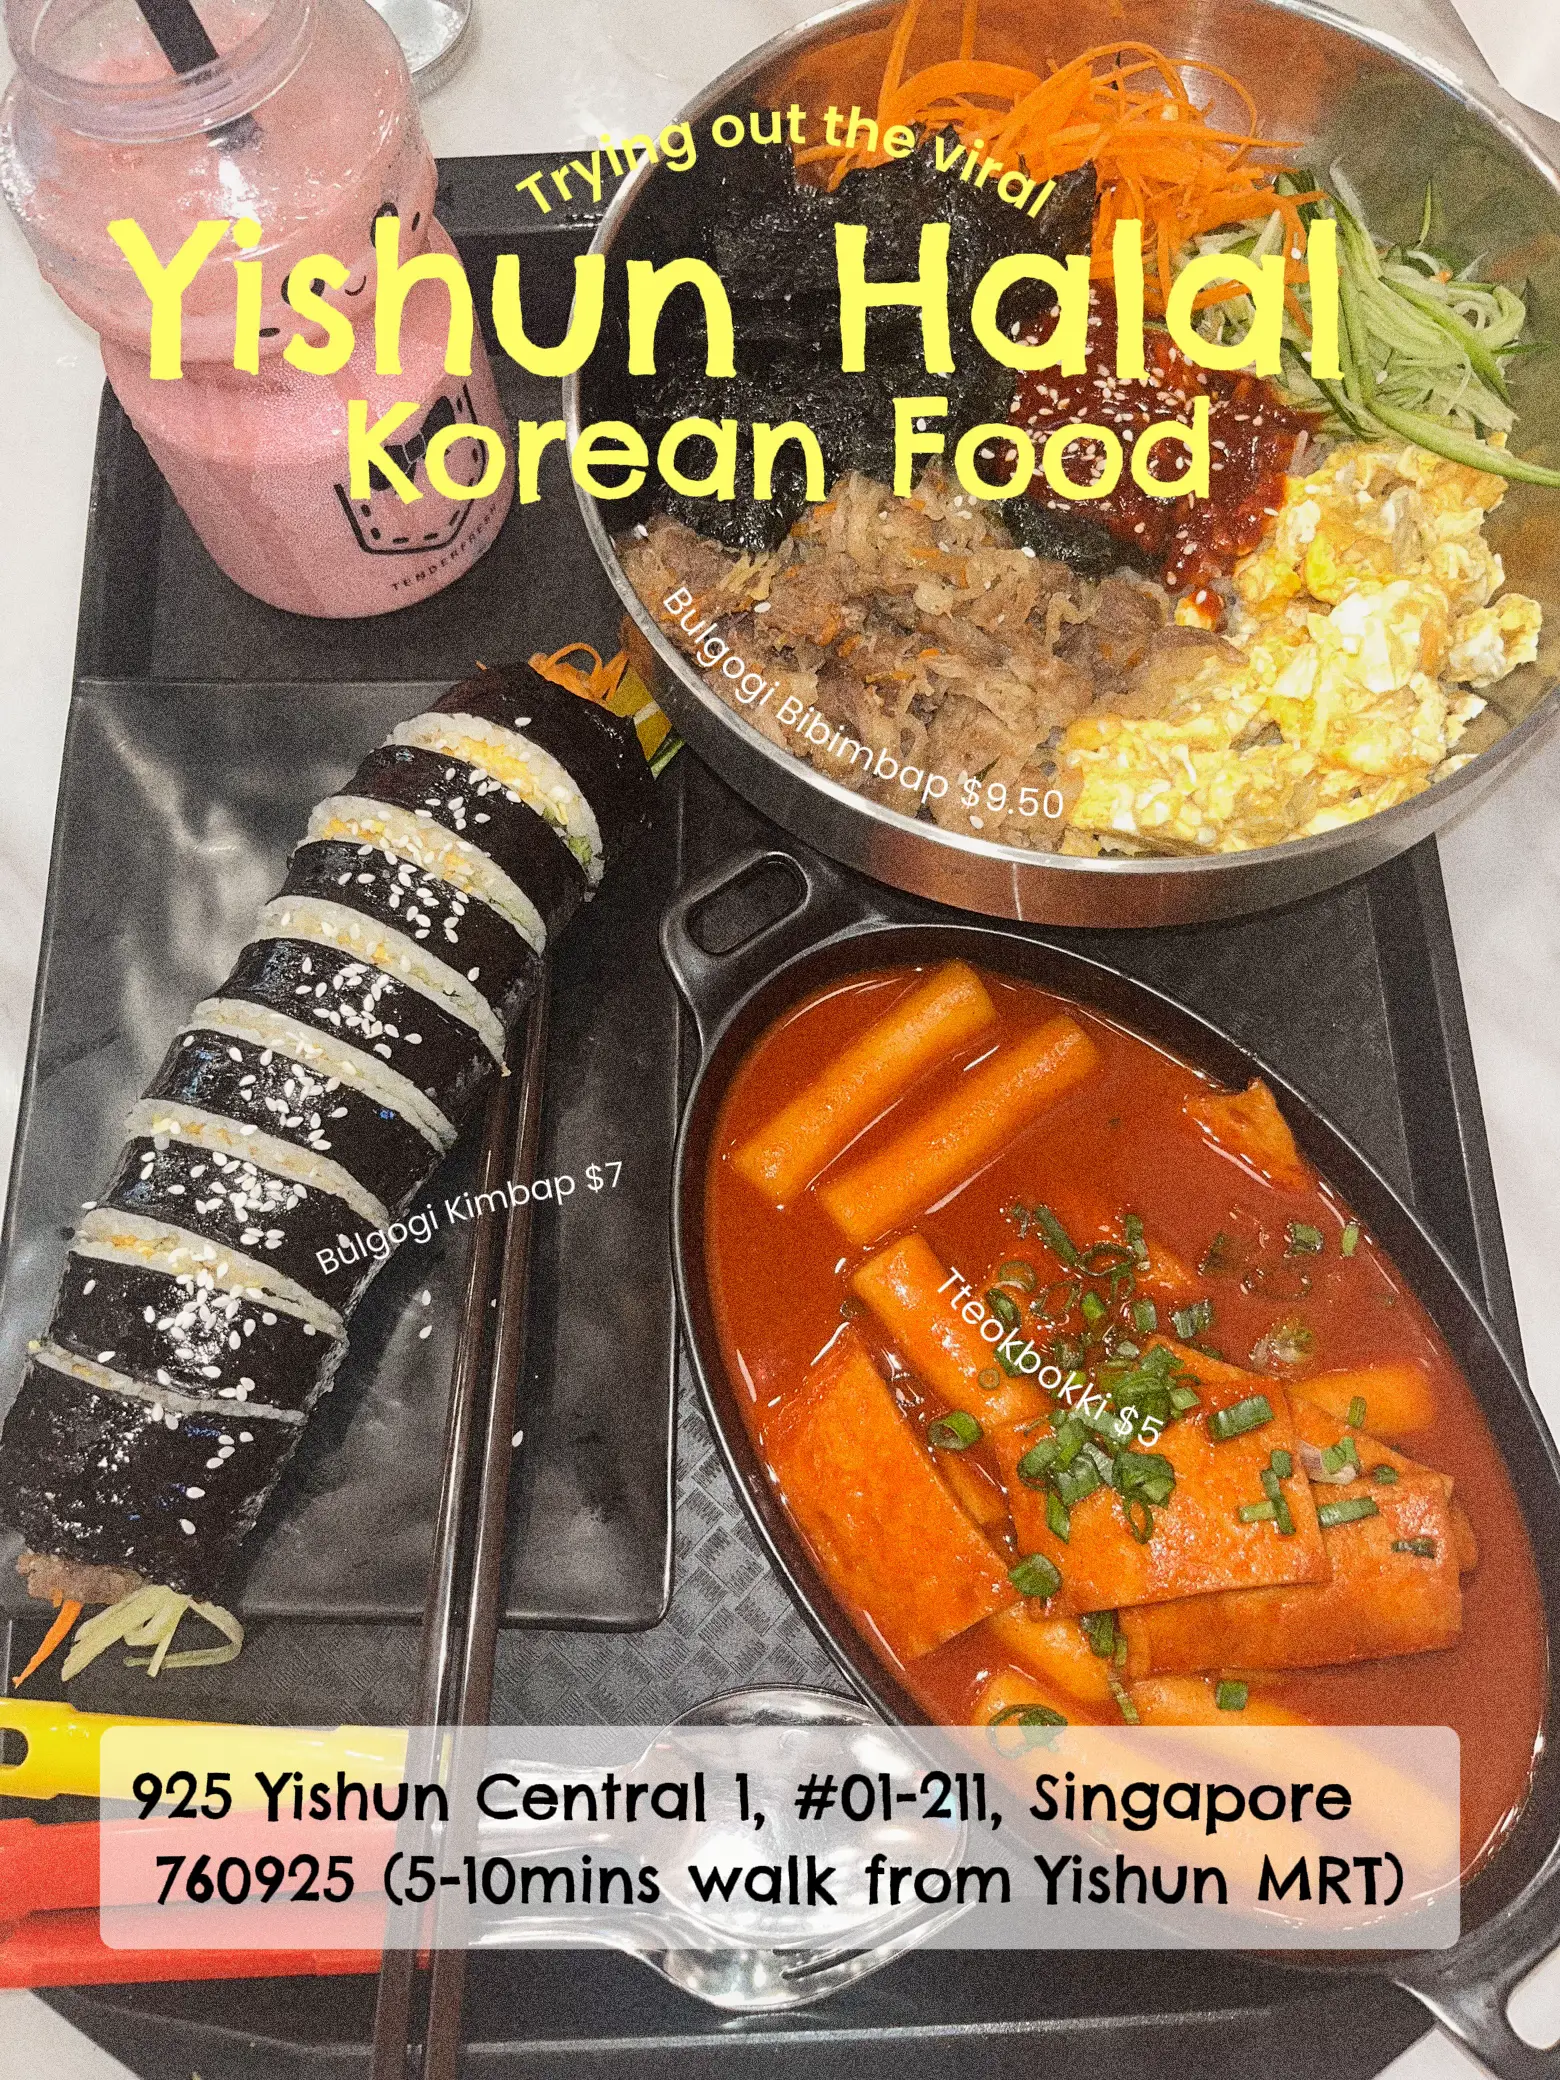 VIRAL YISHUN HALAL KOREAN FOOD HONEST REVIEW‼️‼️‼️'s images